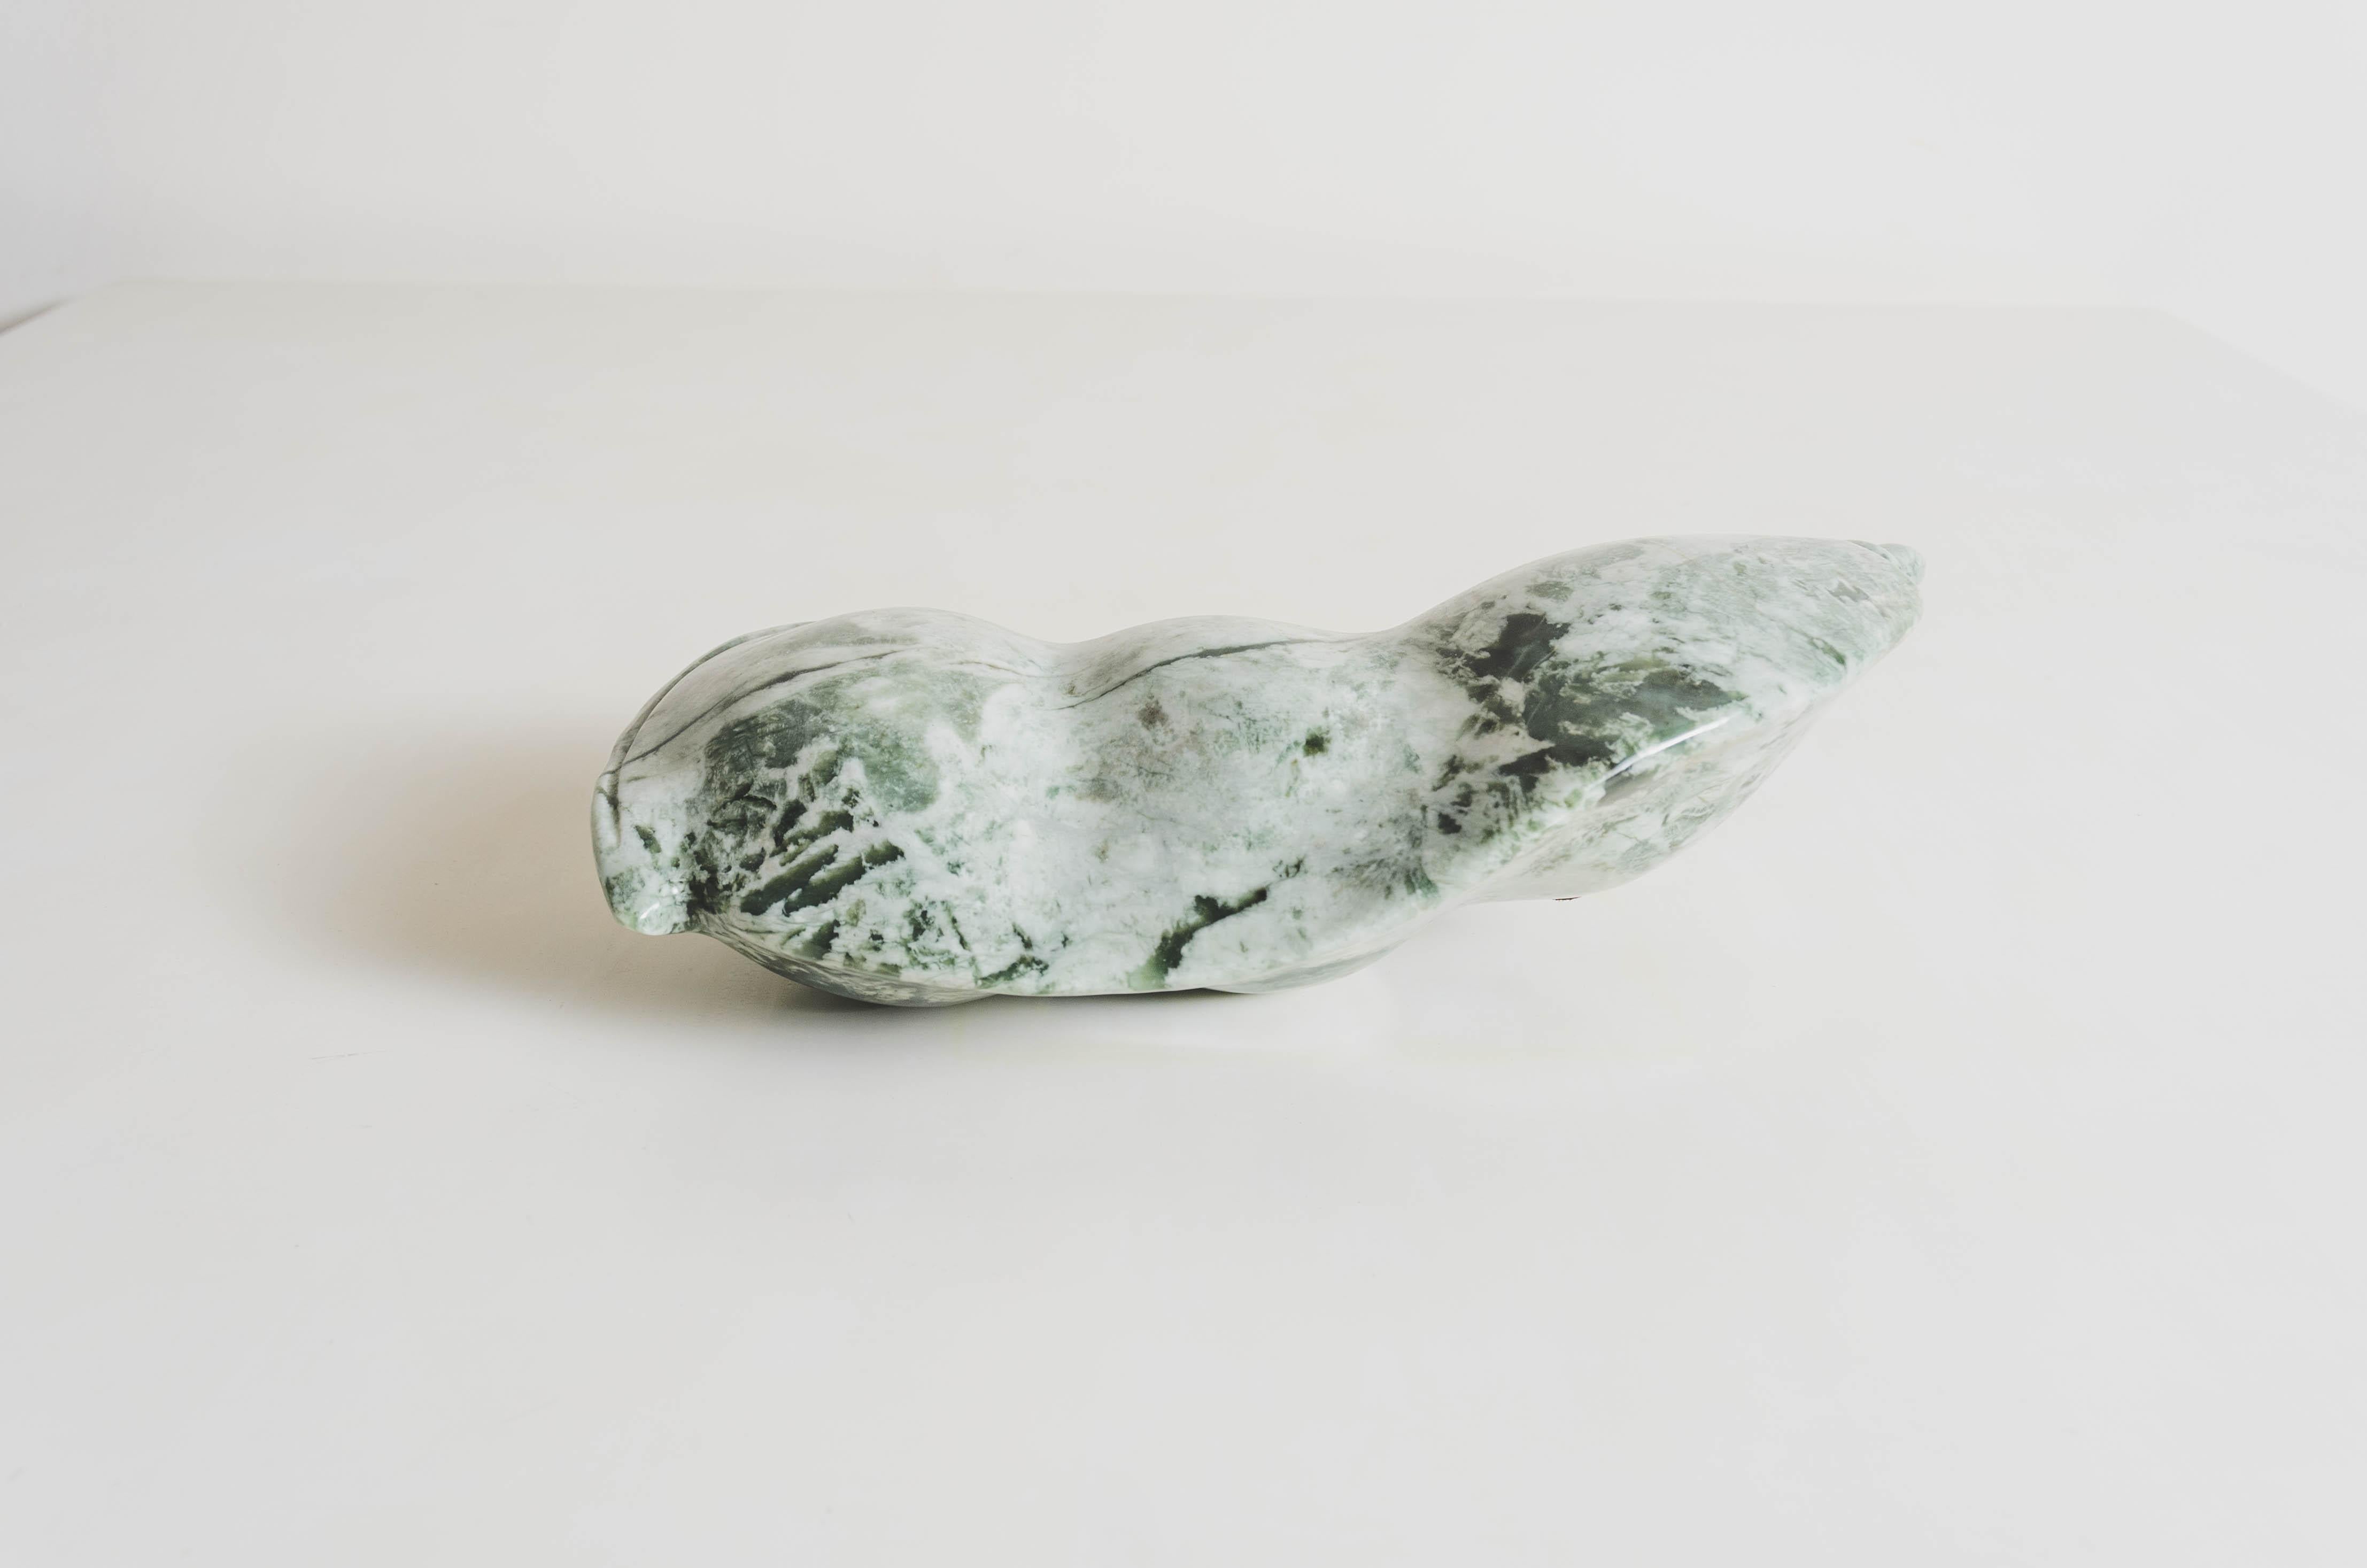 Skulptur der Limabohne
Nephrit Jade
Handgeschnitzt
Limitierte Auflage

Nephrit-Jade ist als „Stein des Himmels“ bekannt und wird sowohl wegen seiner ästhetischen Schönheit als auch wegen seines symbolischen Wertes geschätzt. Die alten Chinesen